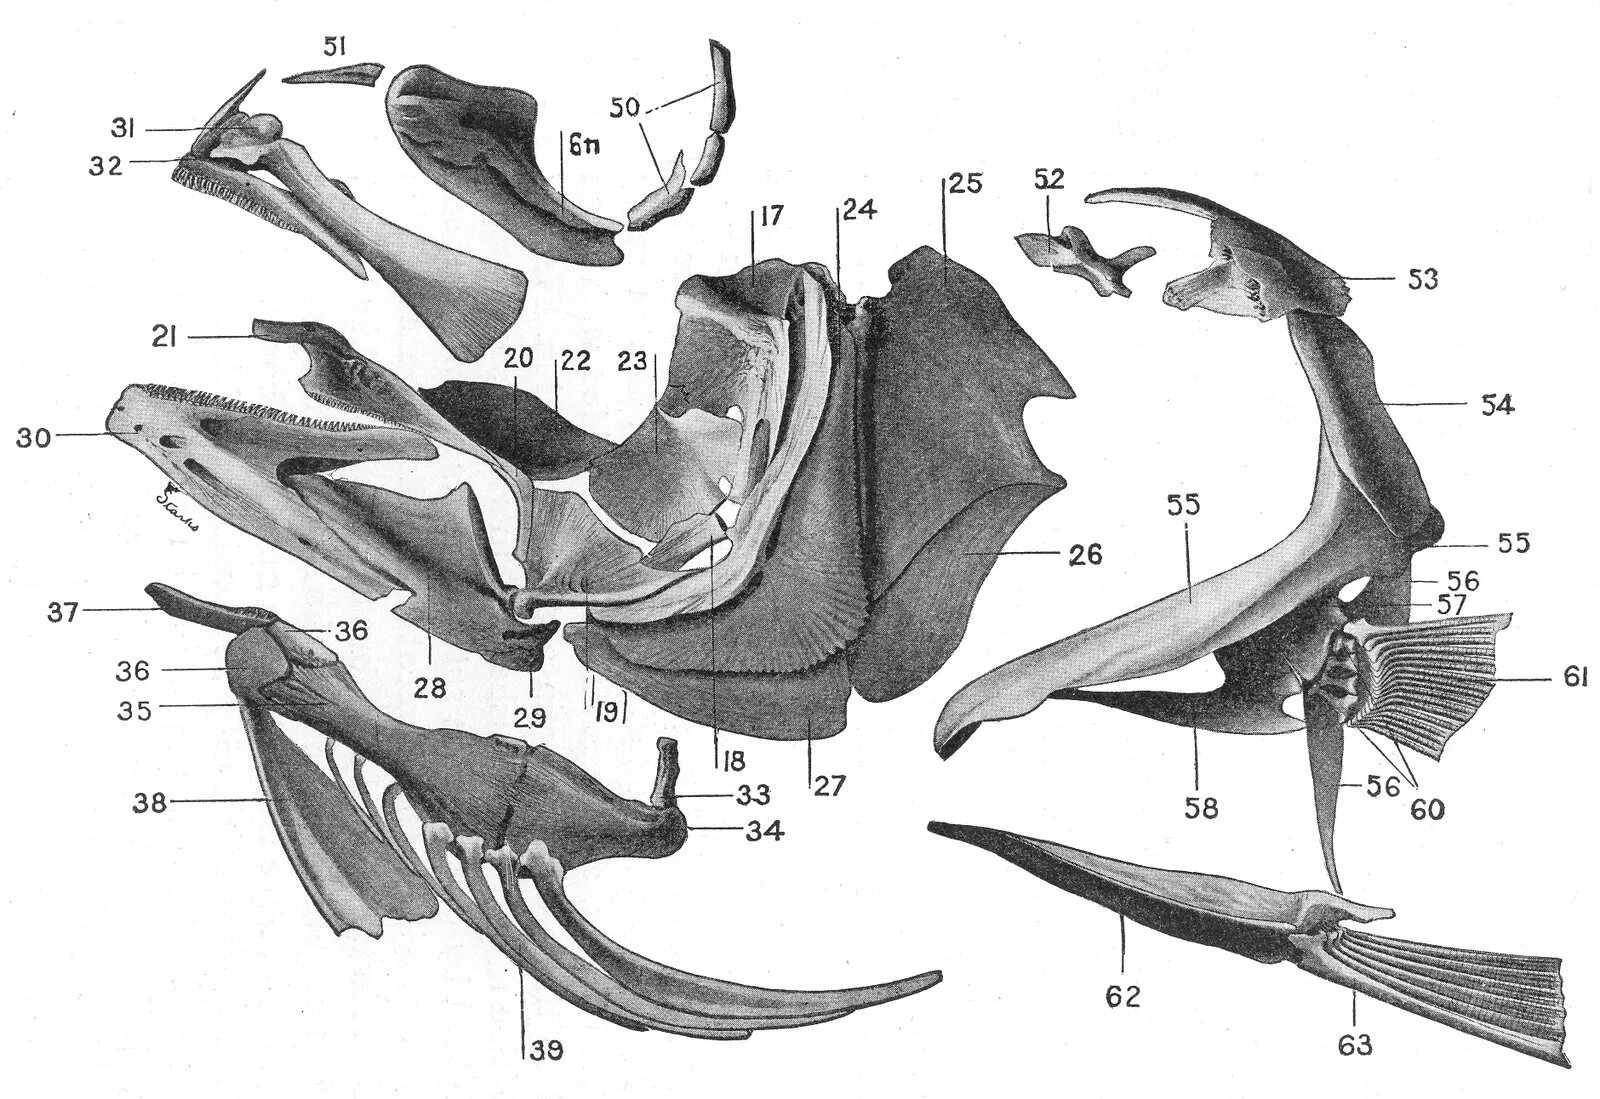 Кости черепа рыбы. Кости черепа костной рыбы. Подъязычная кость у рыб. Строение черепа костных рыб. Череп костной рыбы